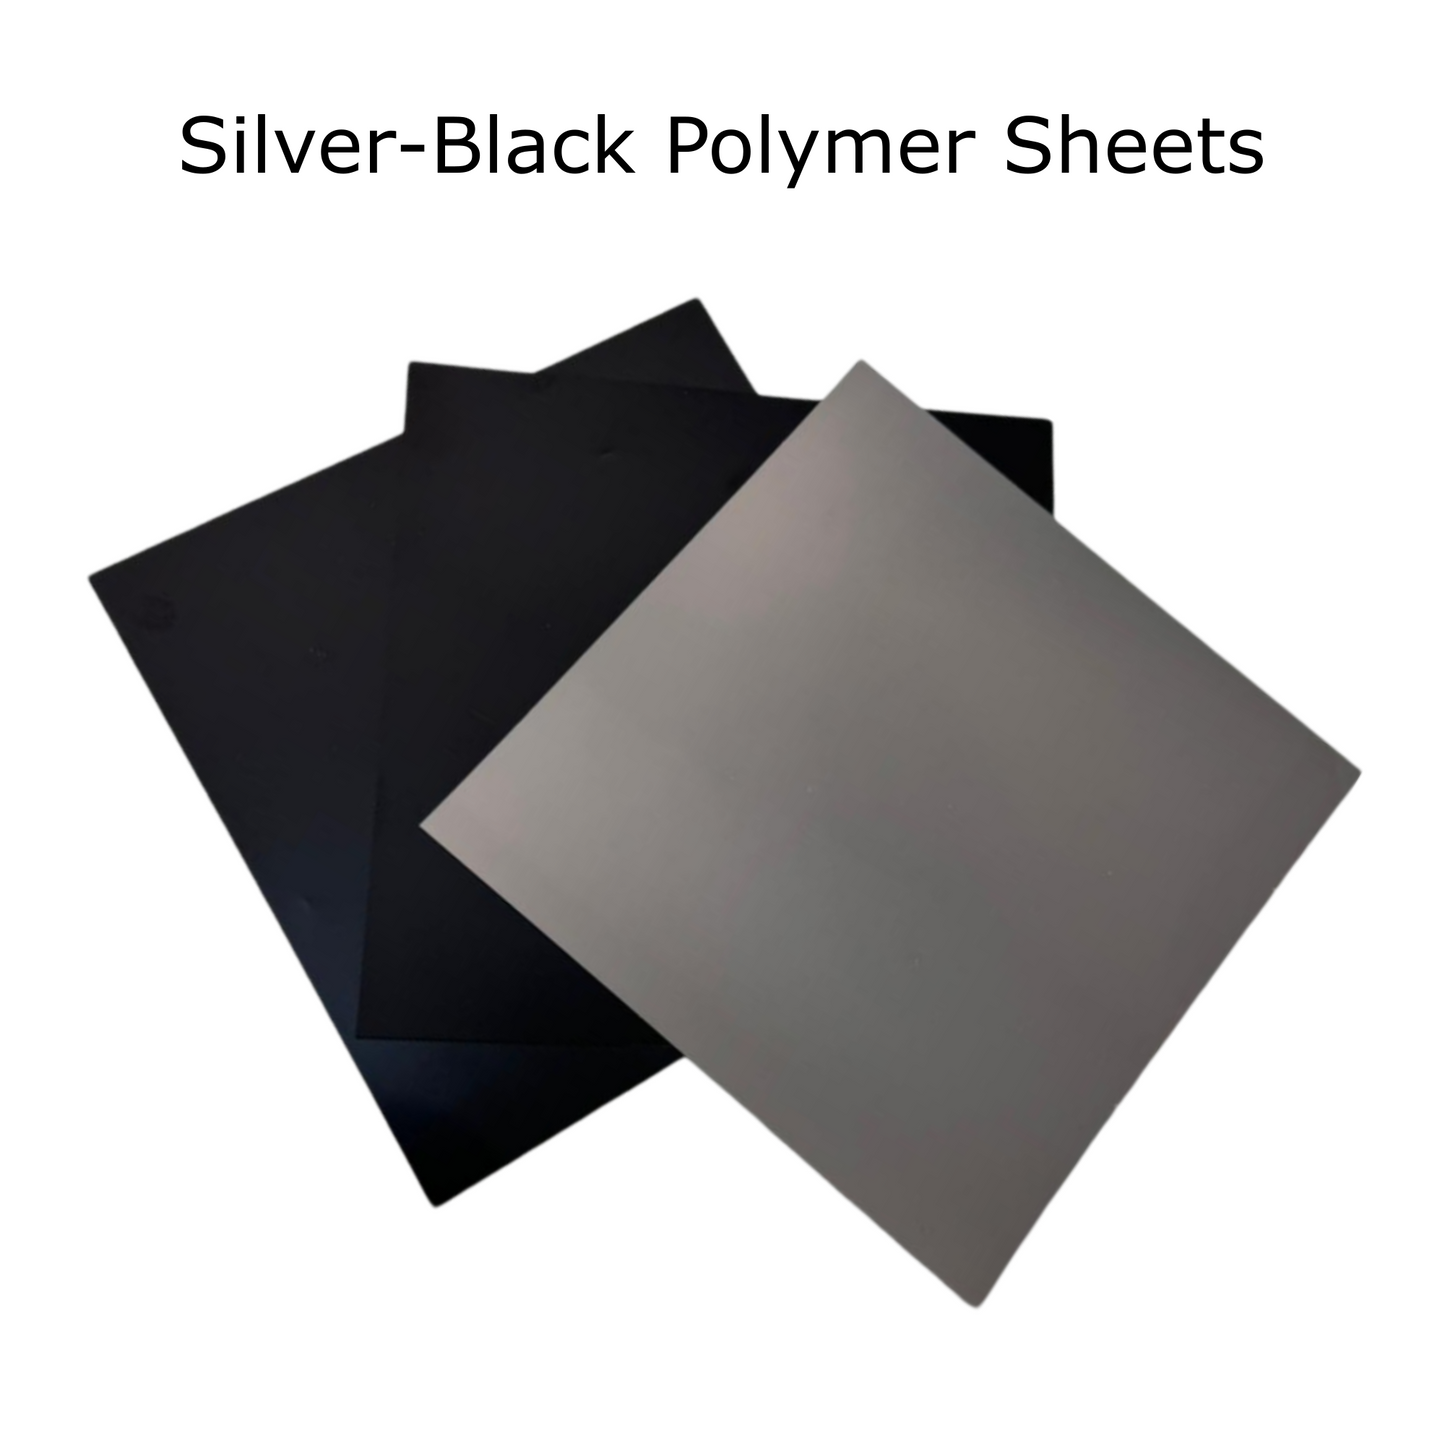 Silver-Black Polymer Solar Filter Sheet, DIY